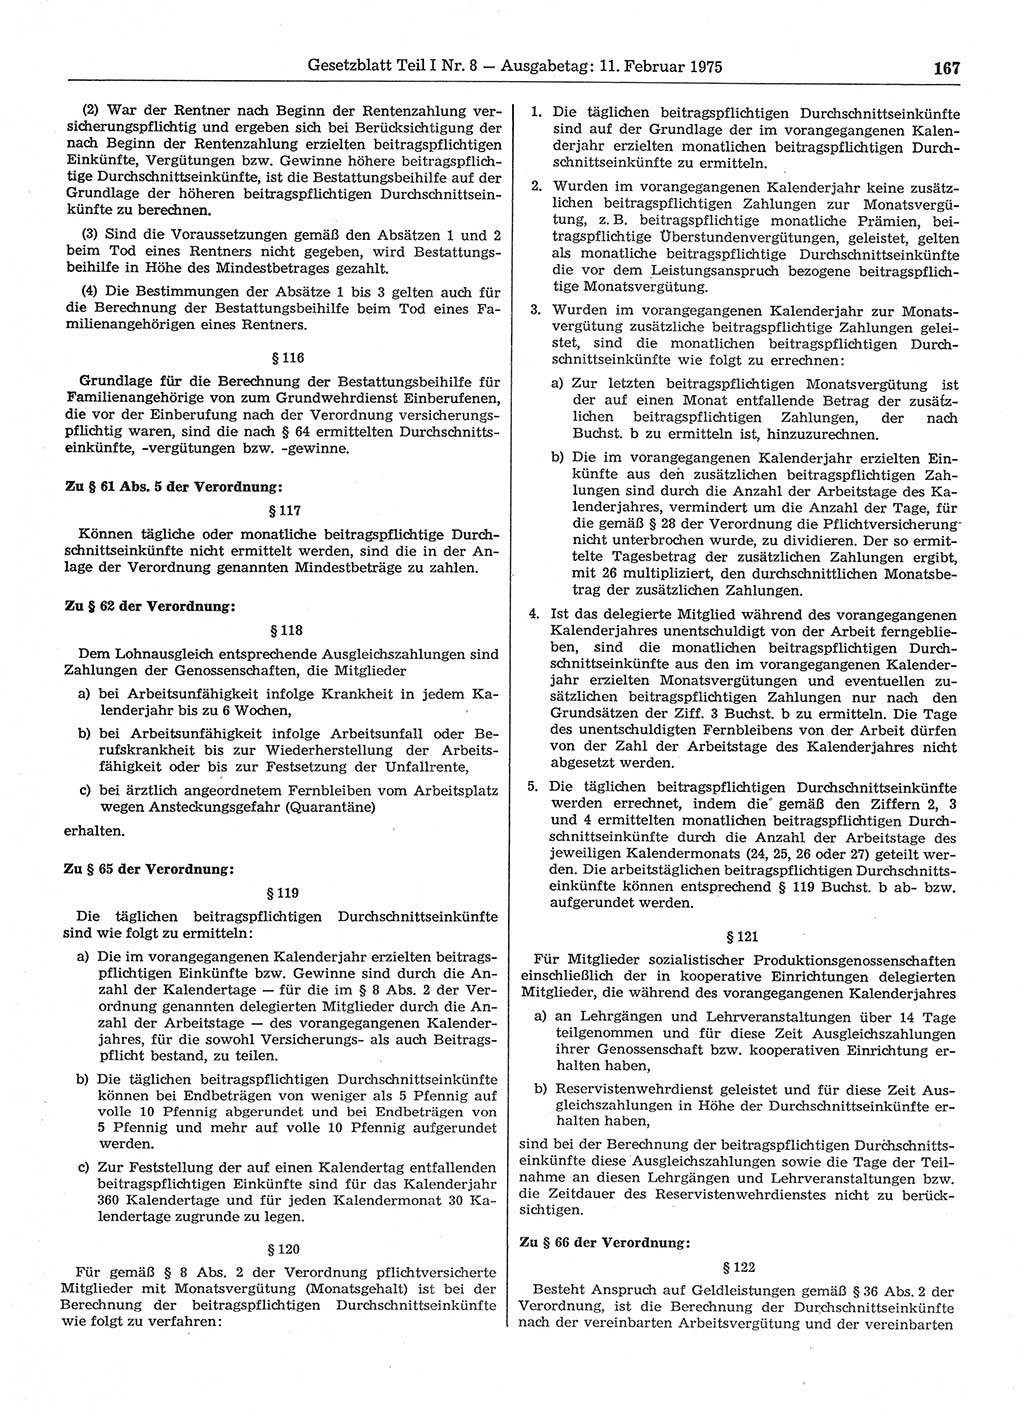 Gesetzblatt (GBl.) der Deutschen Demokratischen Republik (DDR) Teil Ⅰ 1975, Seite 167 (GBl. DDR Ⅰ 1975, S. 167)